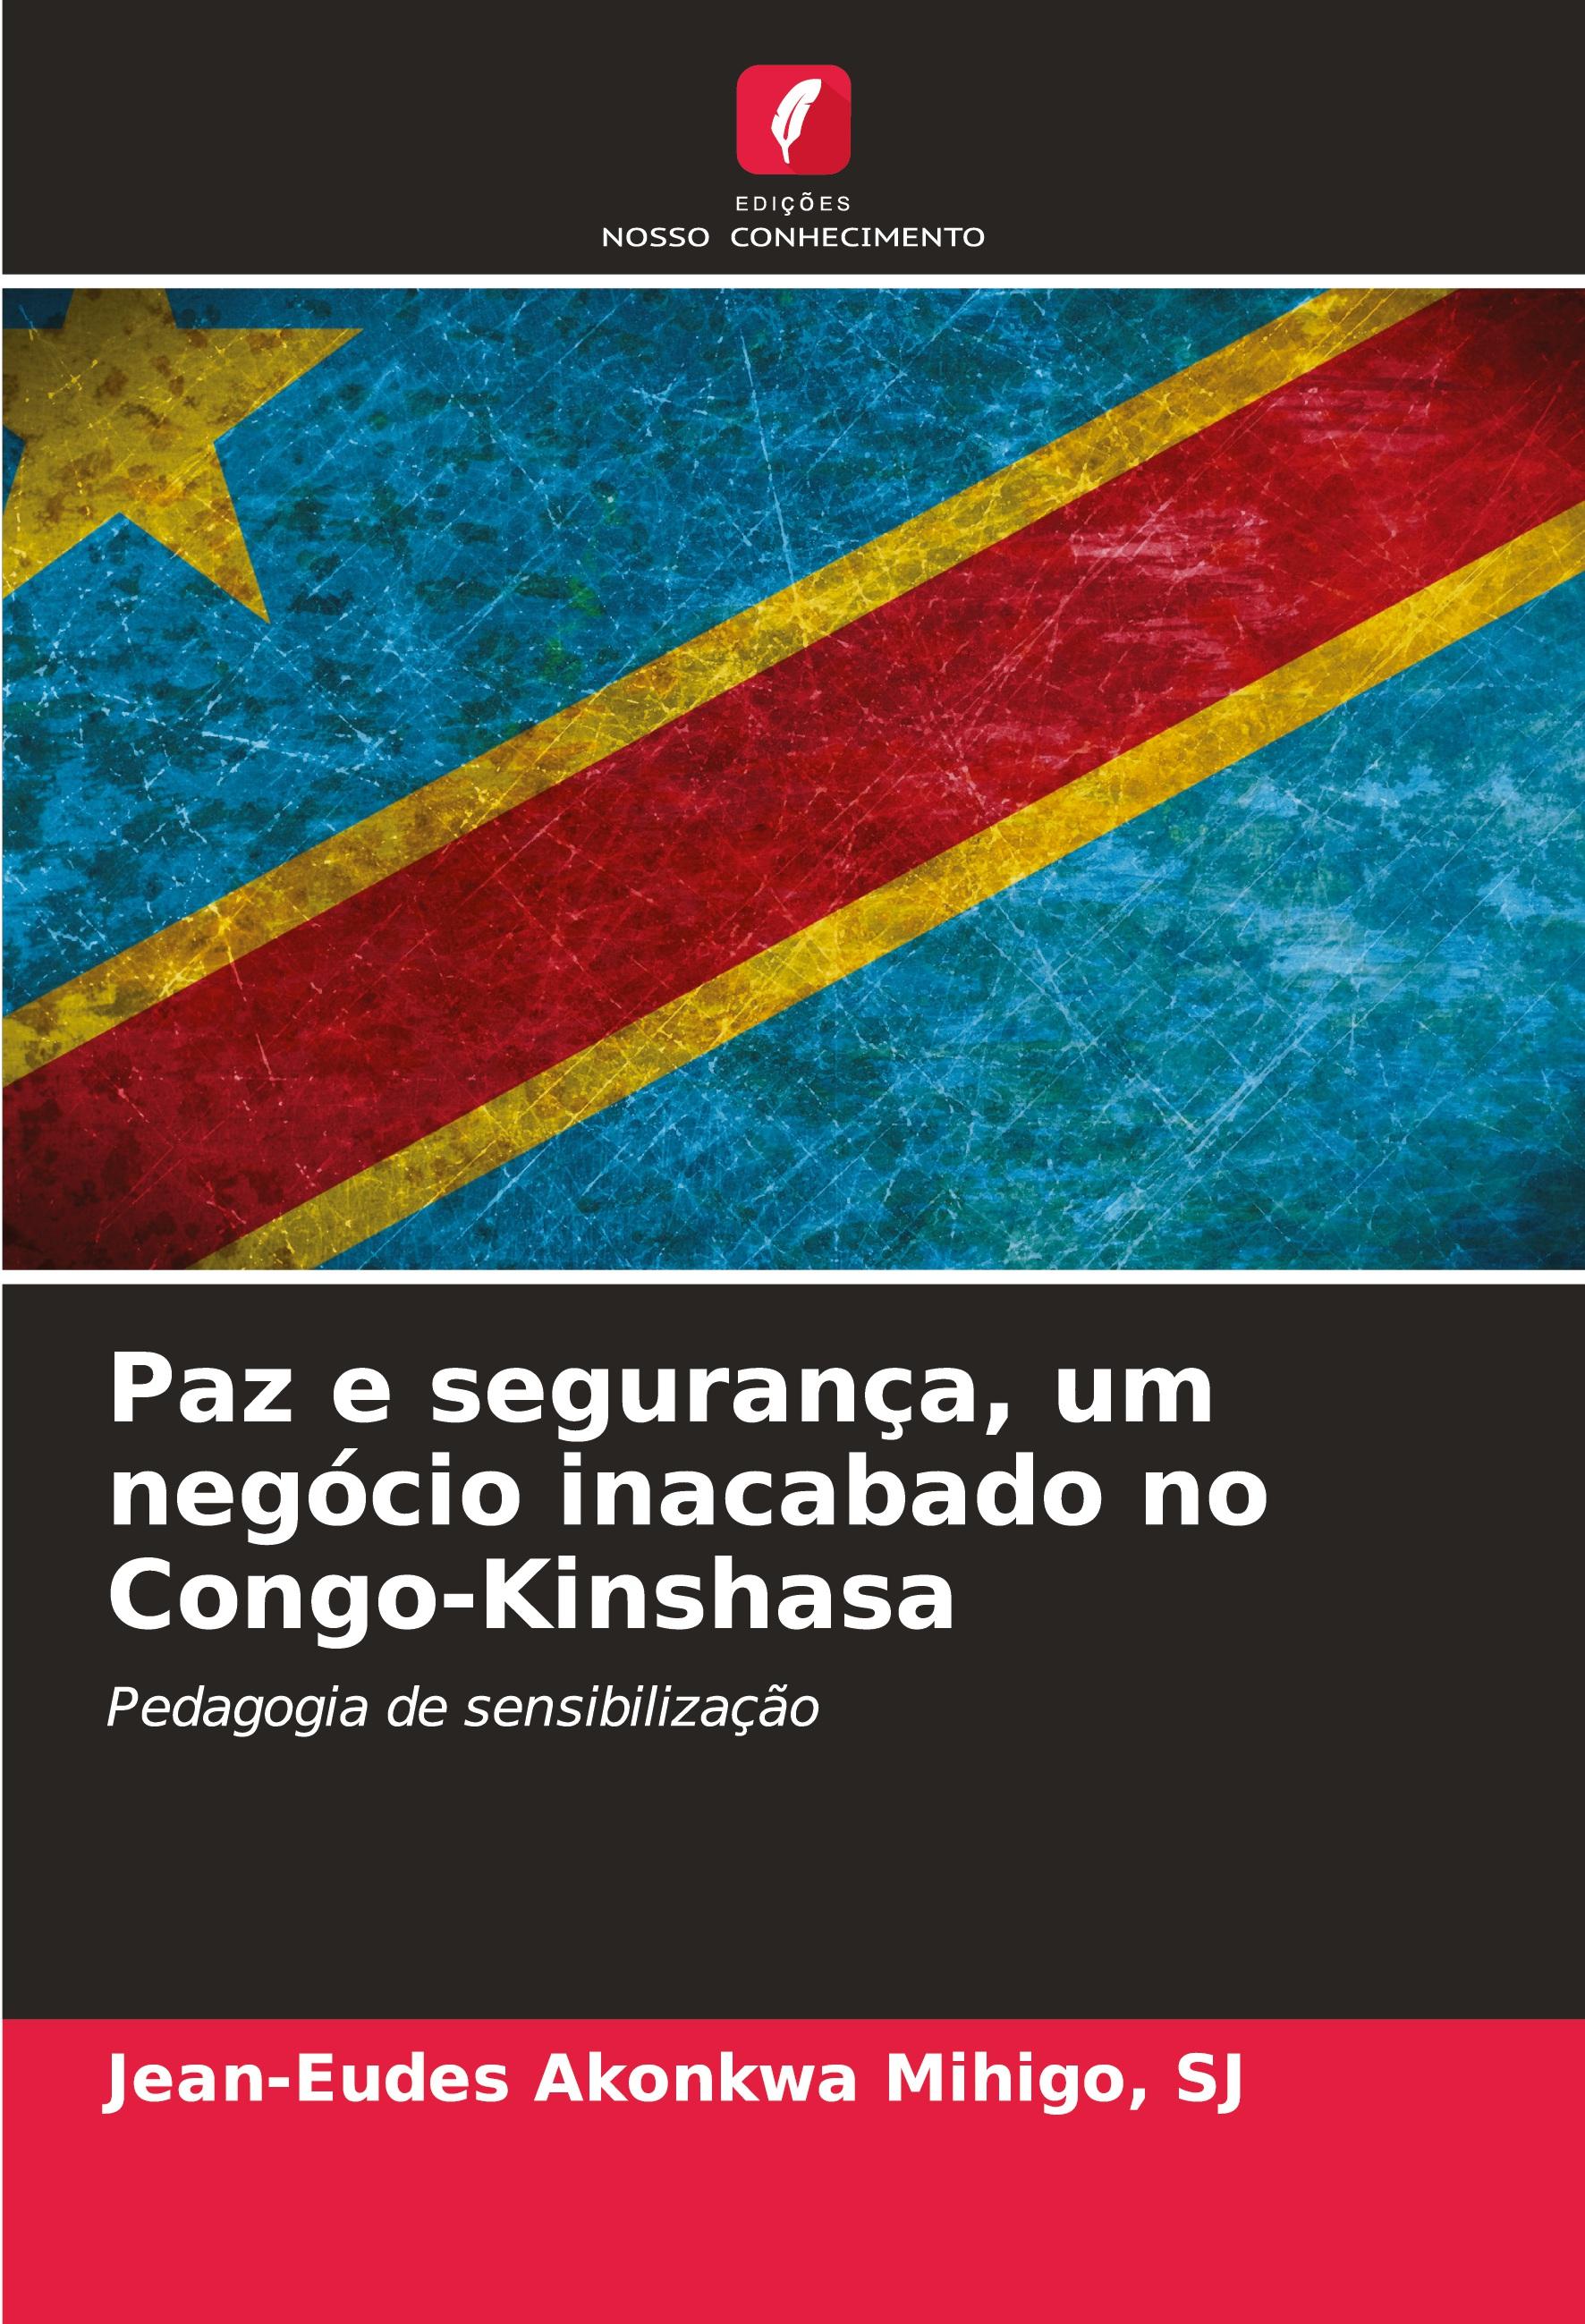 Paz e seguranÃ§a, um negÃ³cio inacabado no Congo-Kinshasa - Akonkwa Mihigo, SJ, Jean-Eudes